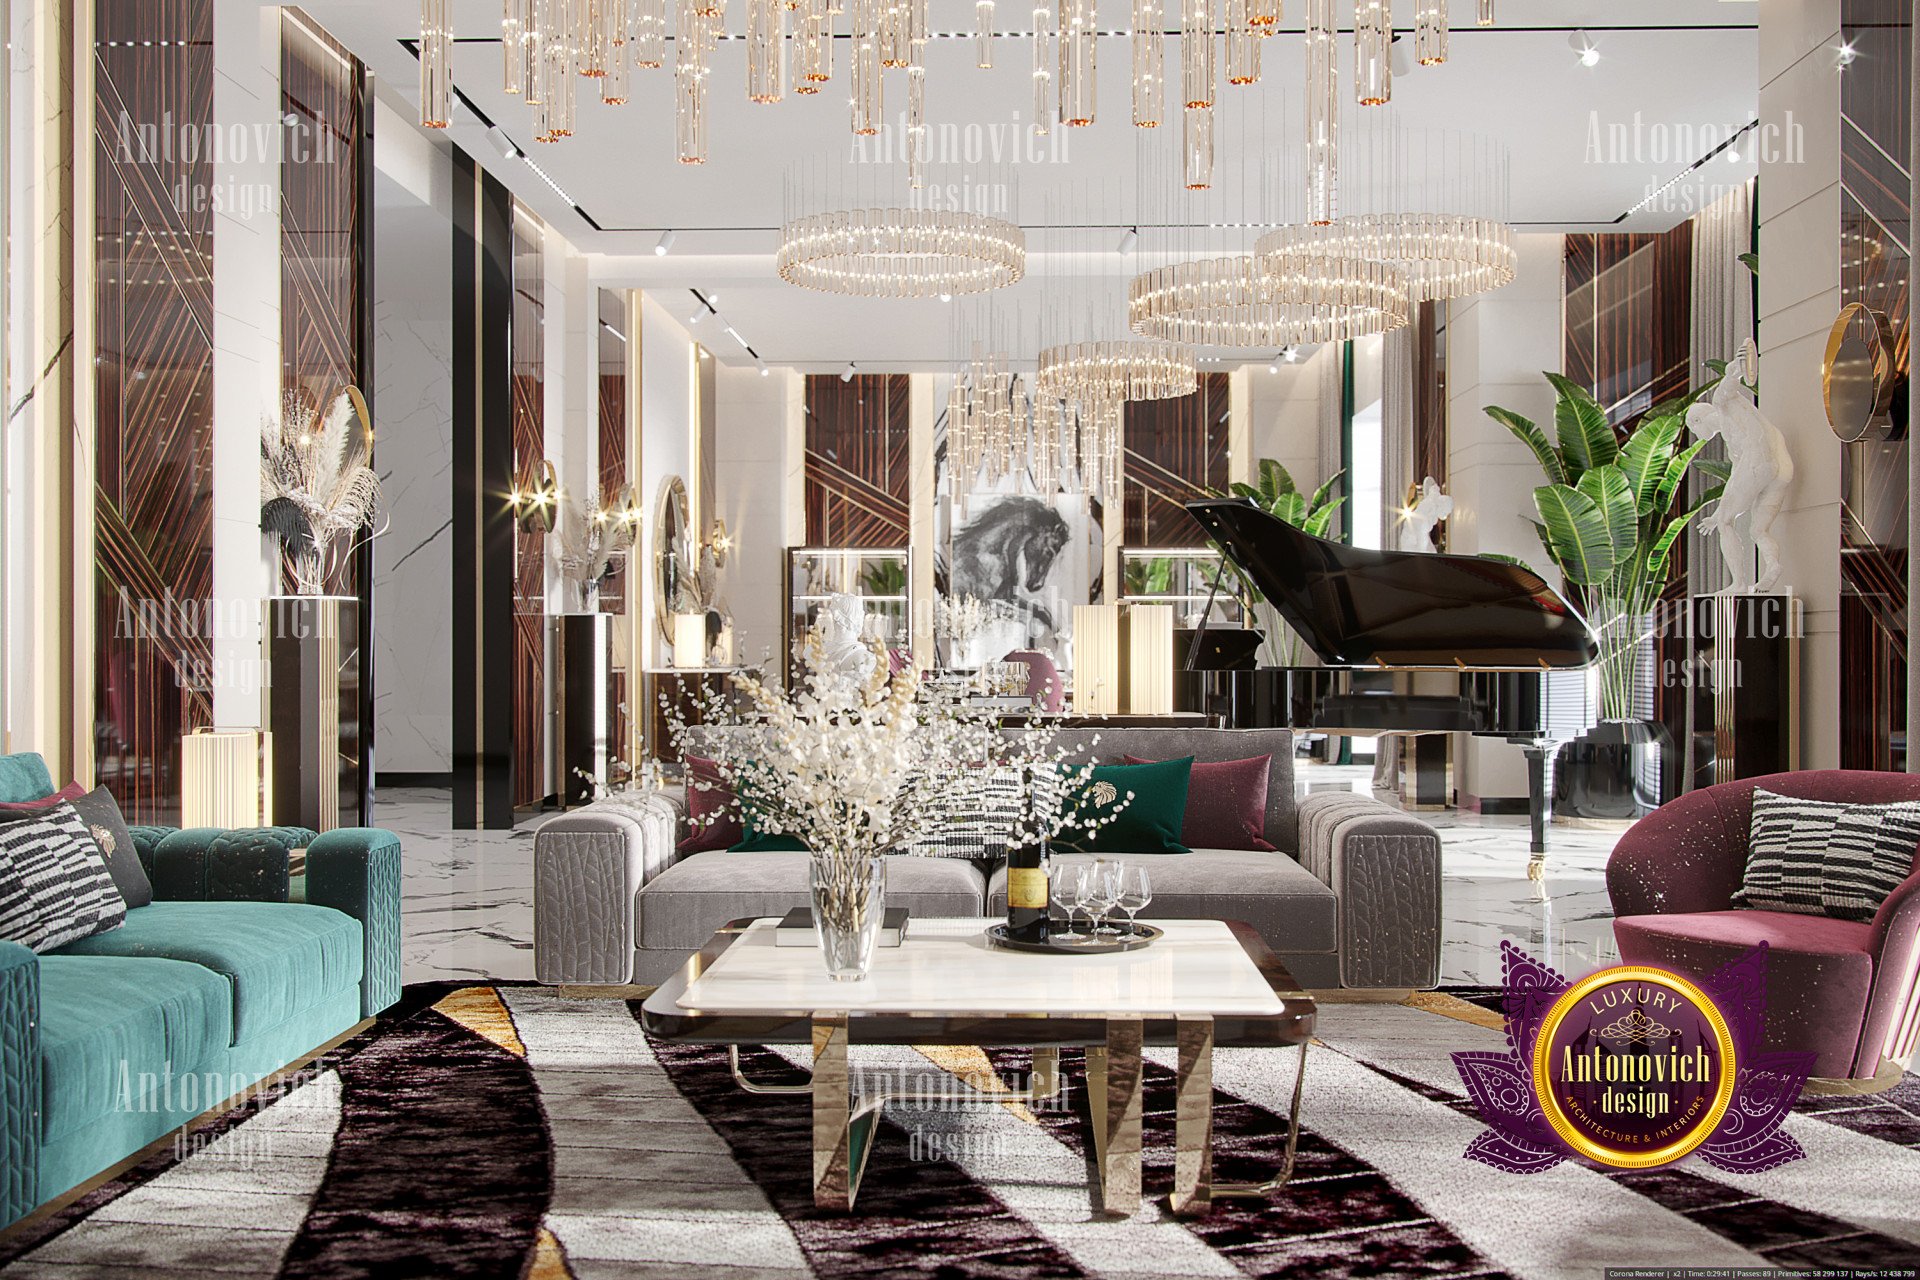 Sophisticated Interior Design luxury interior design